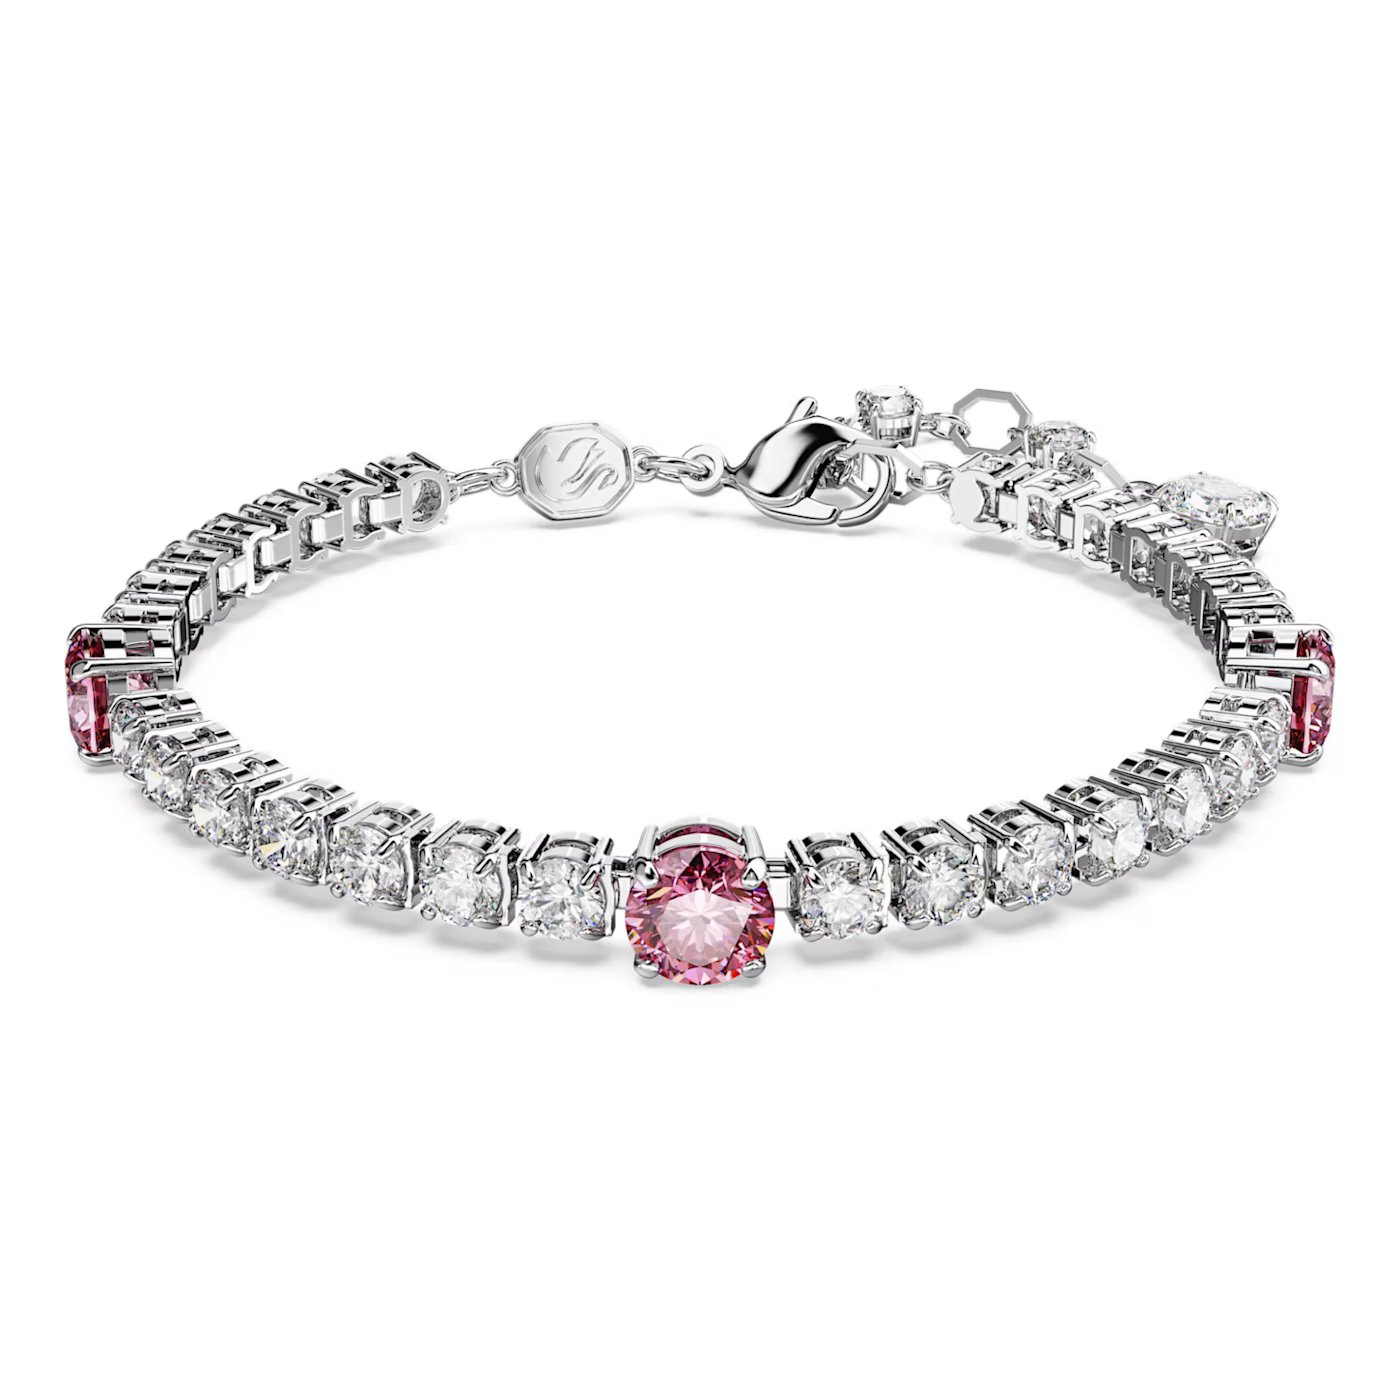 6491f6d1433ea_matrix-tennis-bracelet--mixed-cuts--pink--rhodium-plated-swarovski-5666421.jpg